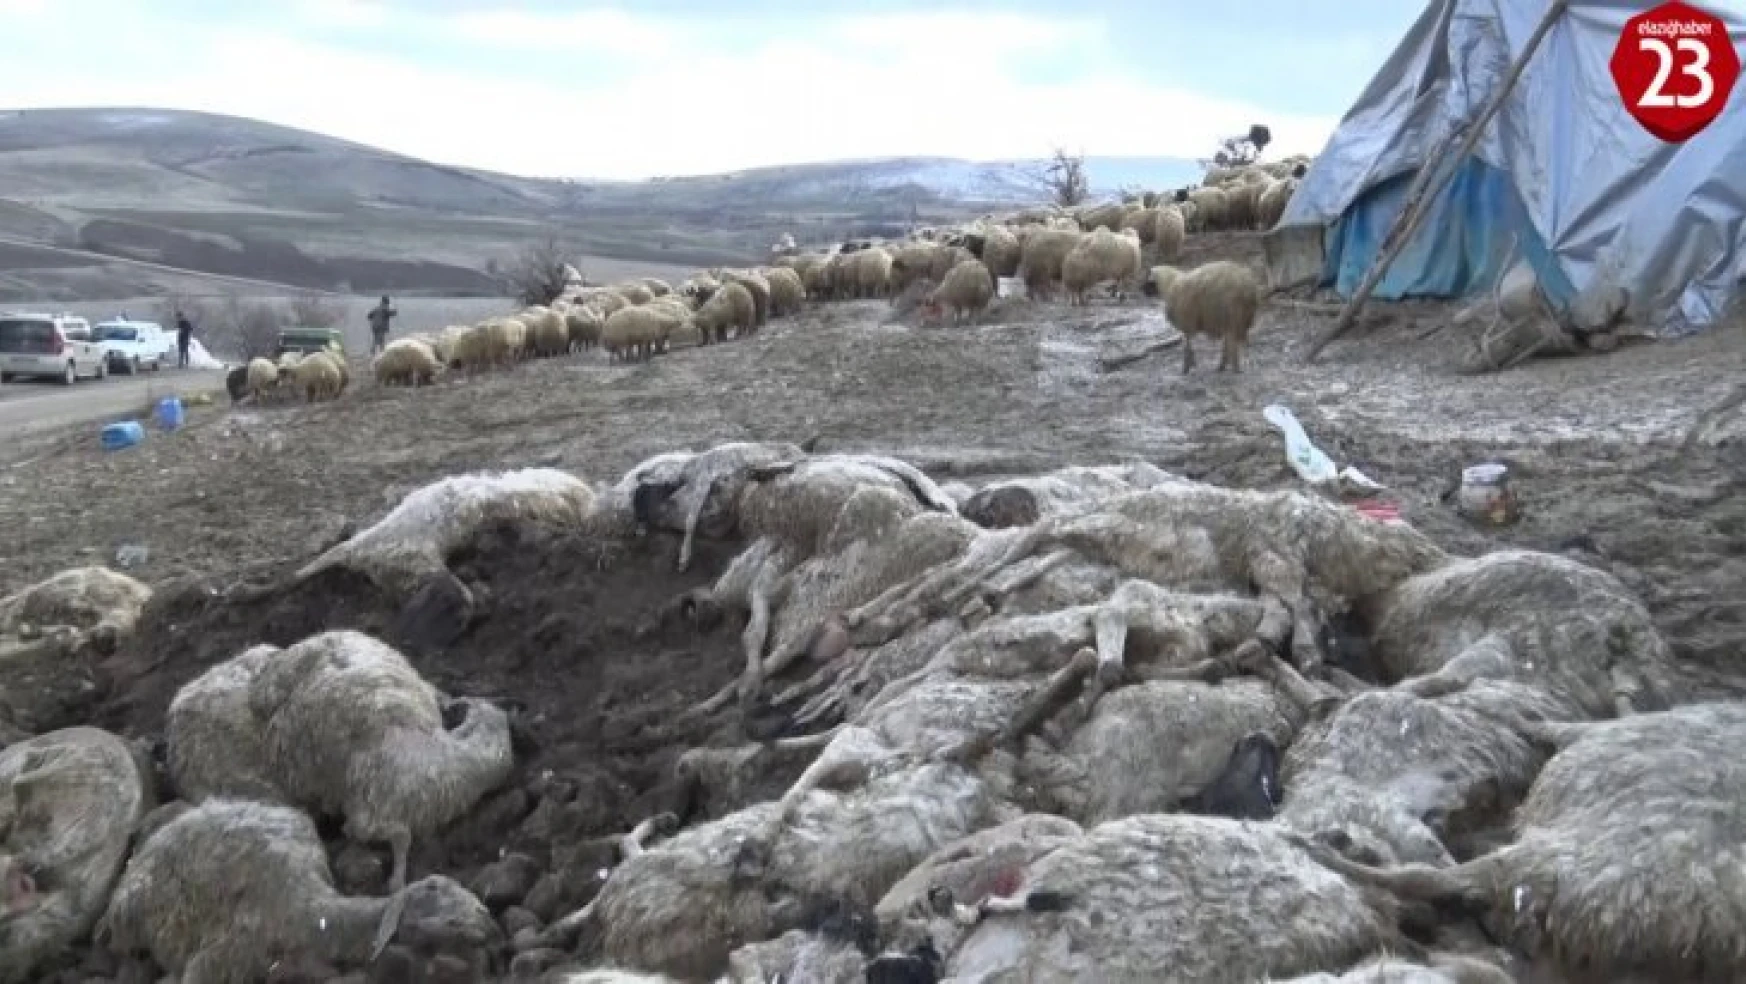 Elazığ'da çiçek hastalığı 600'den fazla koyunu telef etti